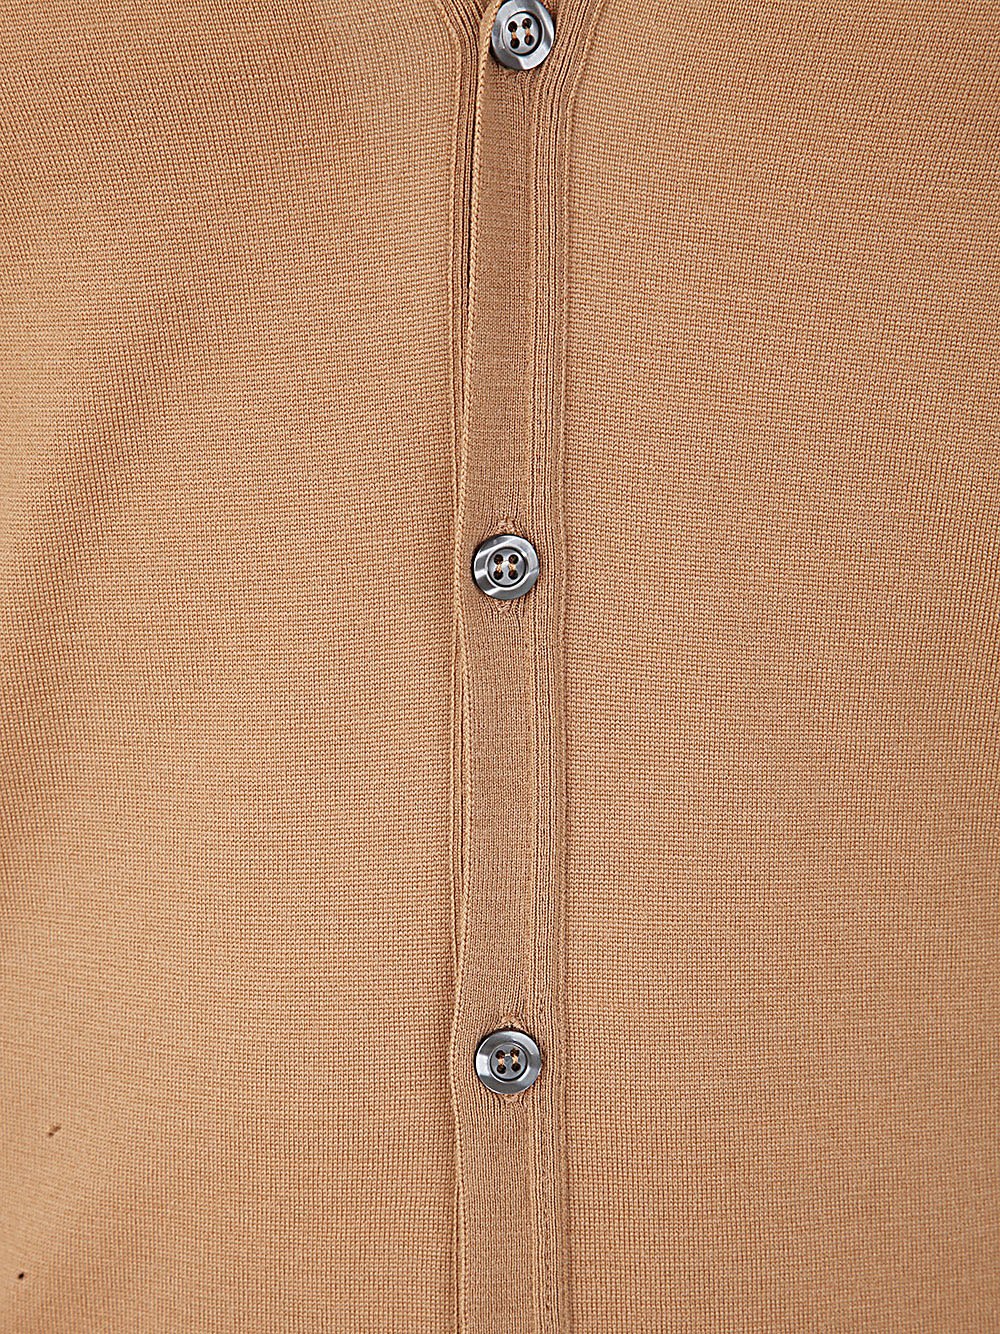 Shop John Smedley Bryn Long Sleeves V Neck Fashioned Cardigan In Nutmeg